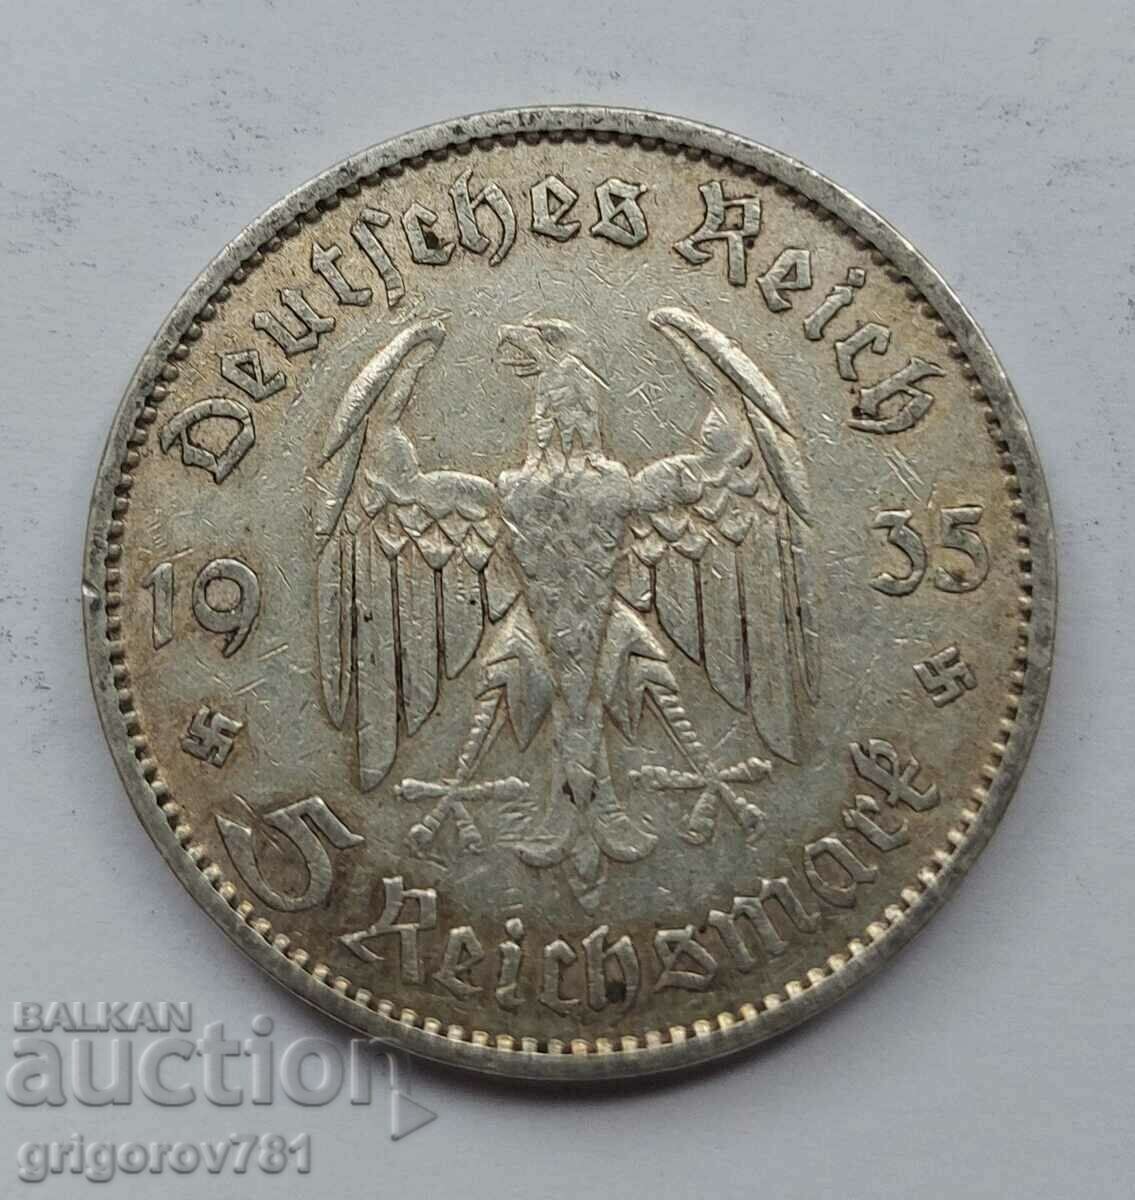 5 марки сребро Германия 1935 А III Райх  сребърна монета №81